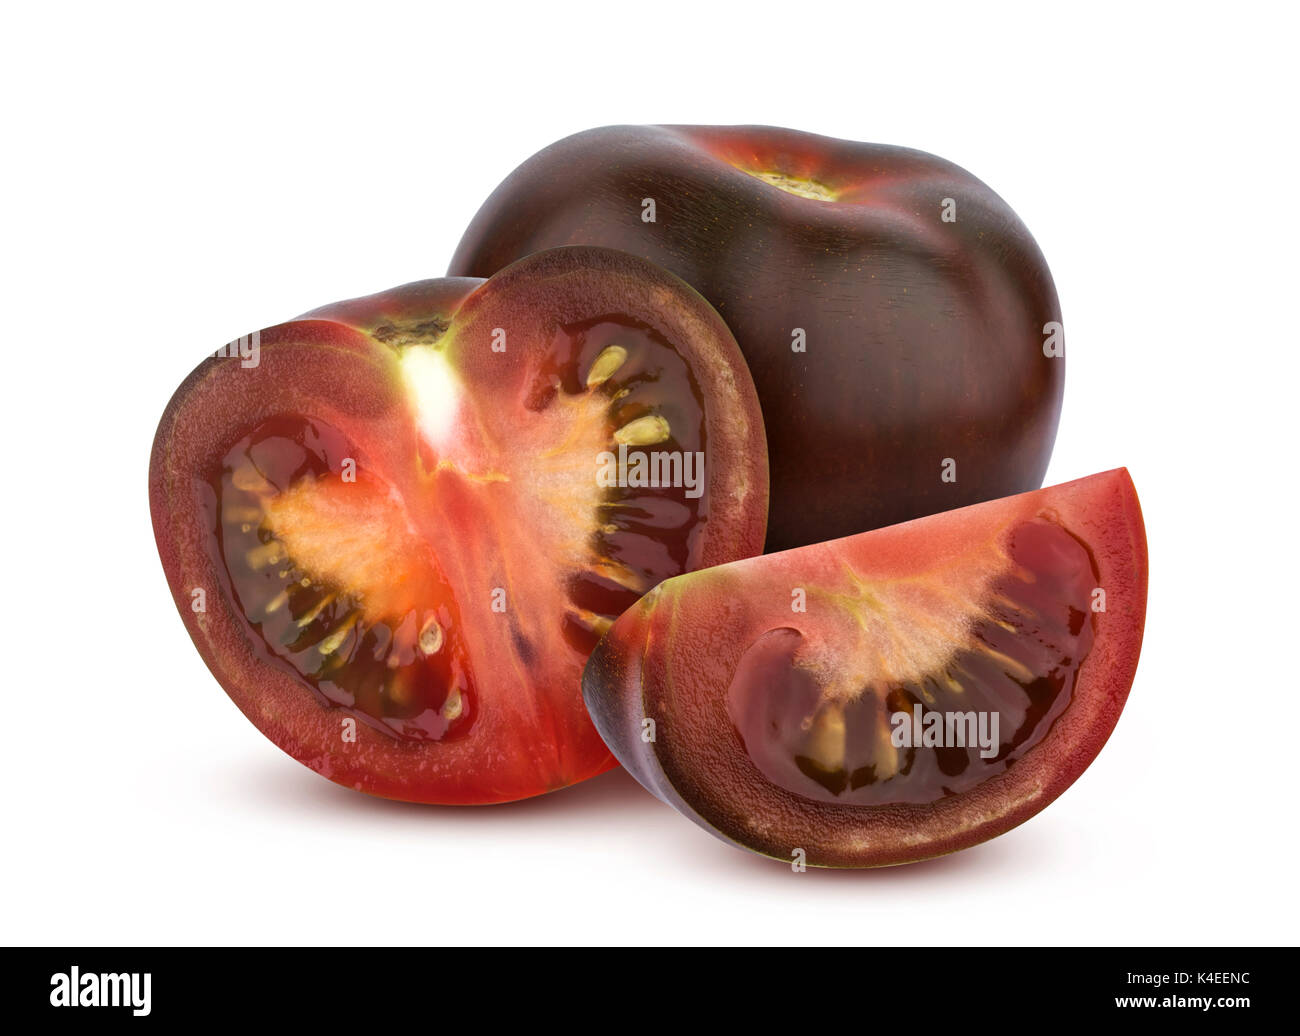 Black tomatoes isolated on white background Stock Photo